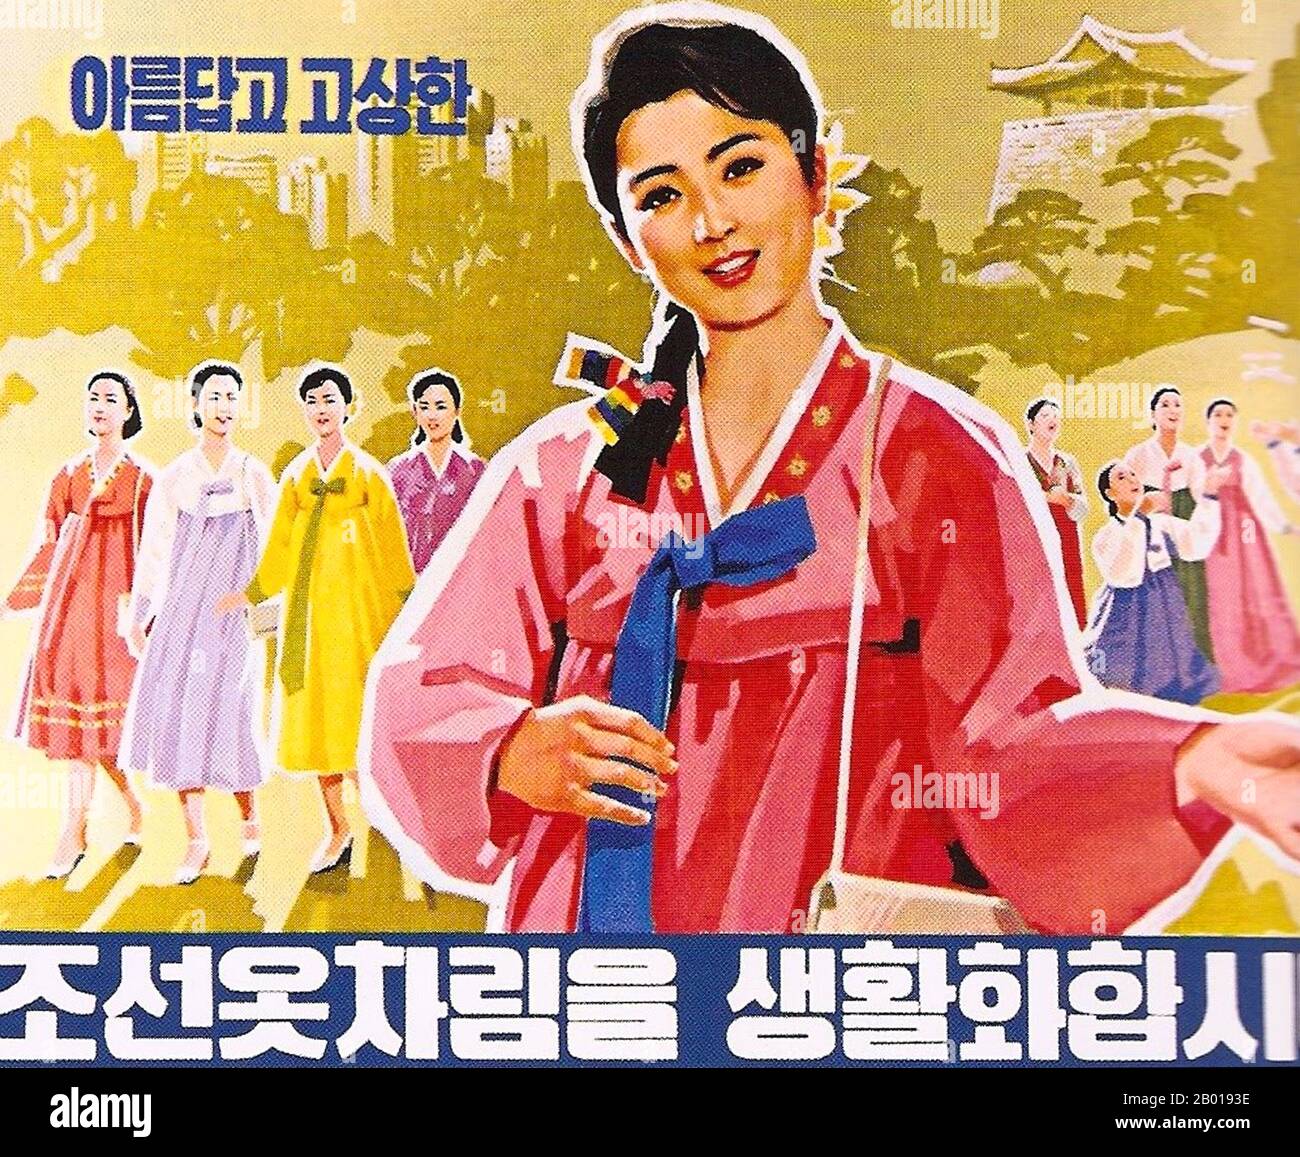 Corée: Affiche de propagande de la Corée du Nord (RPDC) - "faisons du port de la belle et élégante robe coréenne un style de vie", c. 1950s. Le réalisme socialiste est un style d'art réaliste qui s'est développé sous le socialisme en Union soviétique et est devenu un style dominant dans d'autres pays communistes. Le réalisme socialiste est un style téléologique ayant pour objectif la poursuite des objectifs du socialisme et du communisme. Bien qu'elle soit liée, elle ne doit pas être confondue avec le réalisme social, un type d'art qui dépeint de façon réaliste des sujets de préoccupation sociale. Banque D'Images